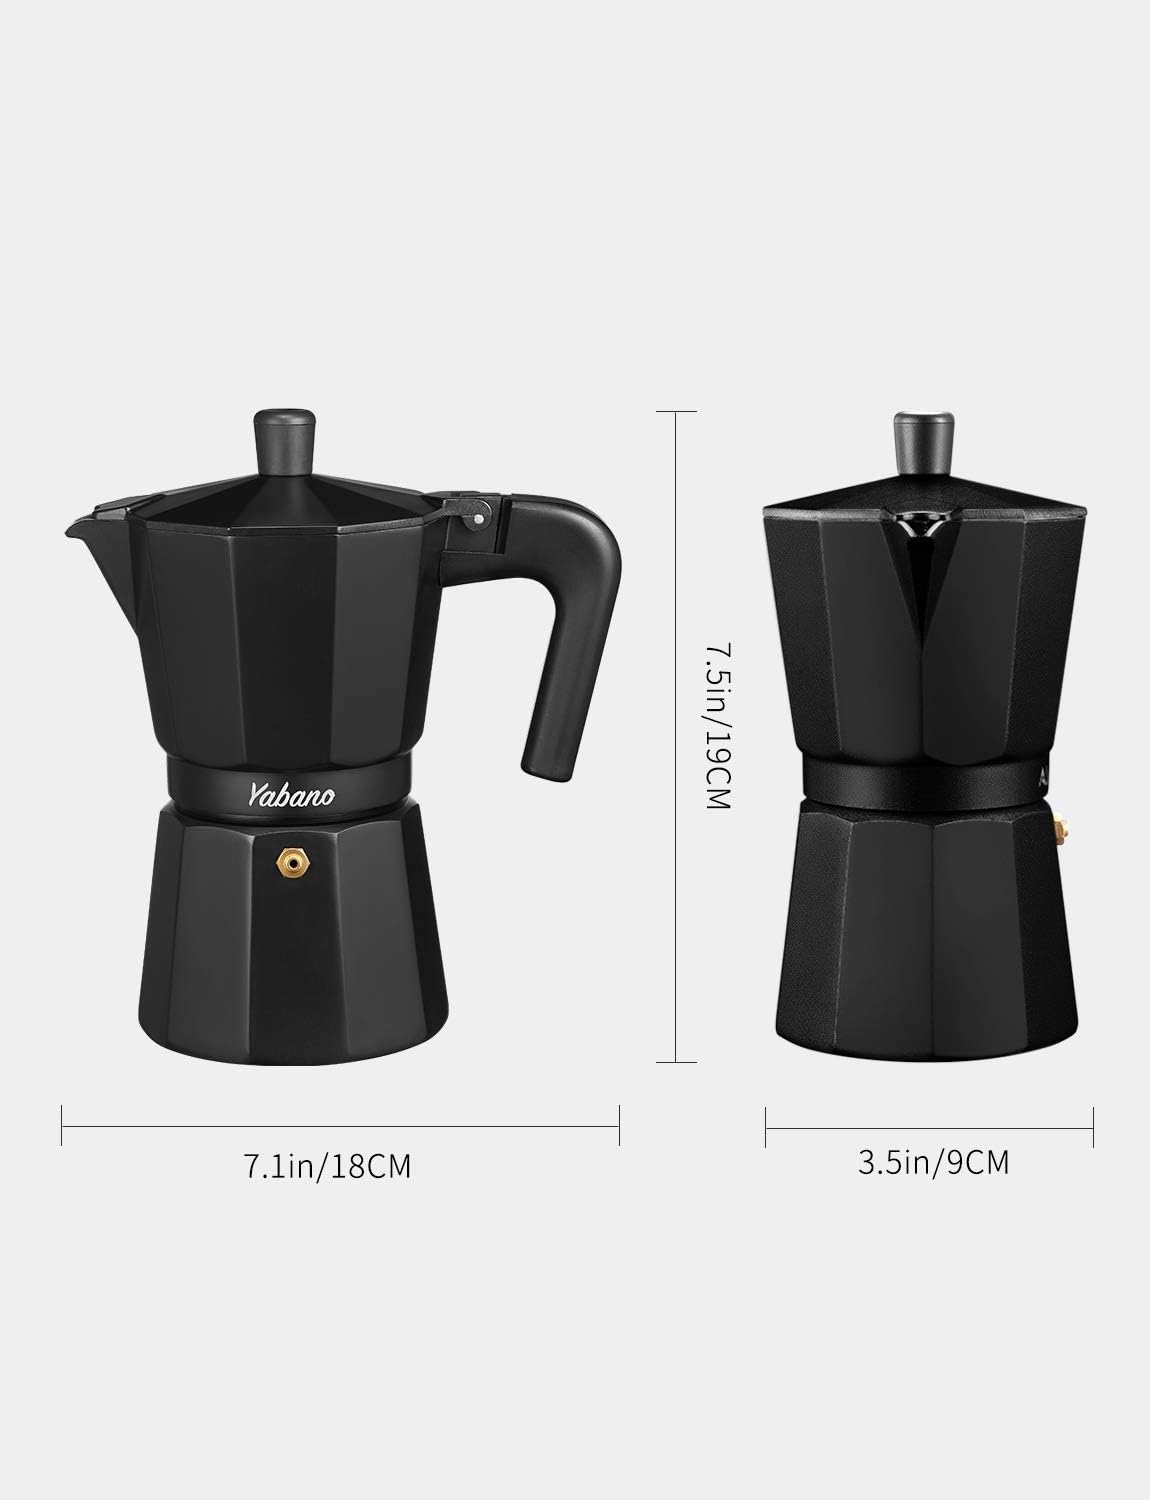 Yabano Stovetop Espresso Maker, 6 Cups Moka Coffee Pot Italian Espresso for Gas or Electric Ceramic Stovetop, Italian Coffee maker for Cappuccino or Latte, Black